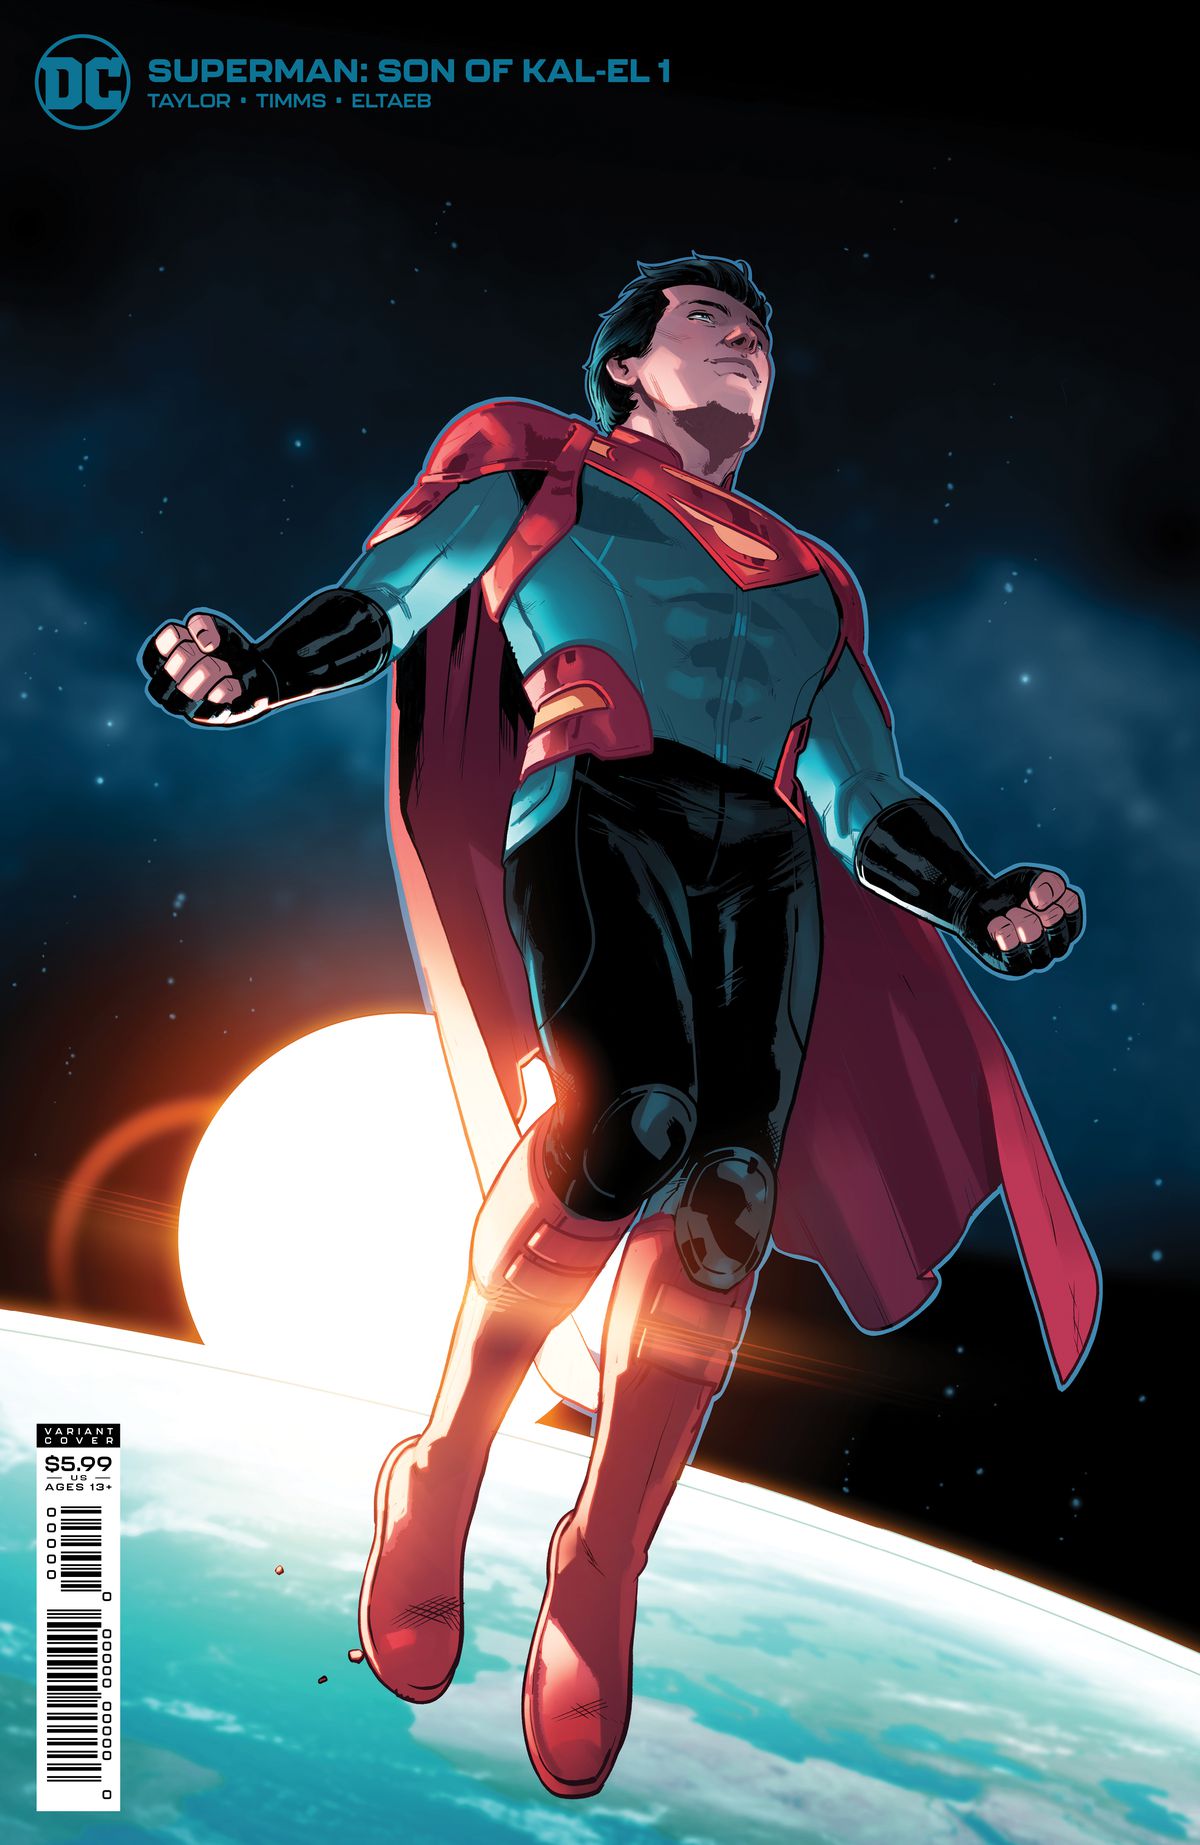 Jon Kent, Superboy / Superman si libra nello spazio mentre il sole sorge sopra l'orizzonte della terra dietro di lui sulla copertina di Superman: Son of Kal-El # 1, DC Comics (2021). 